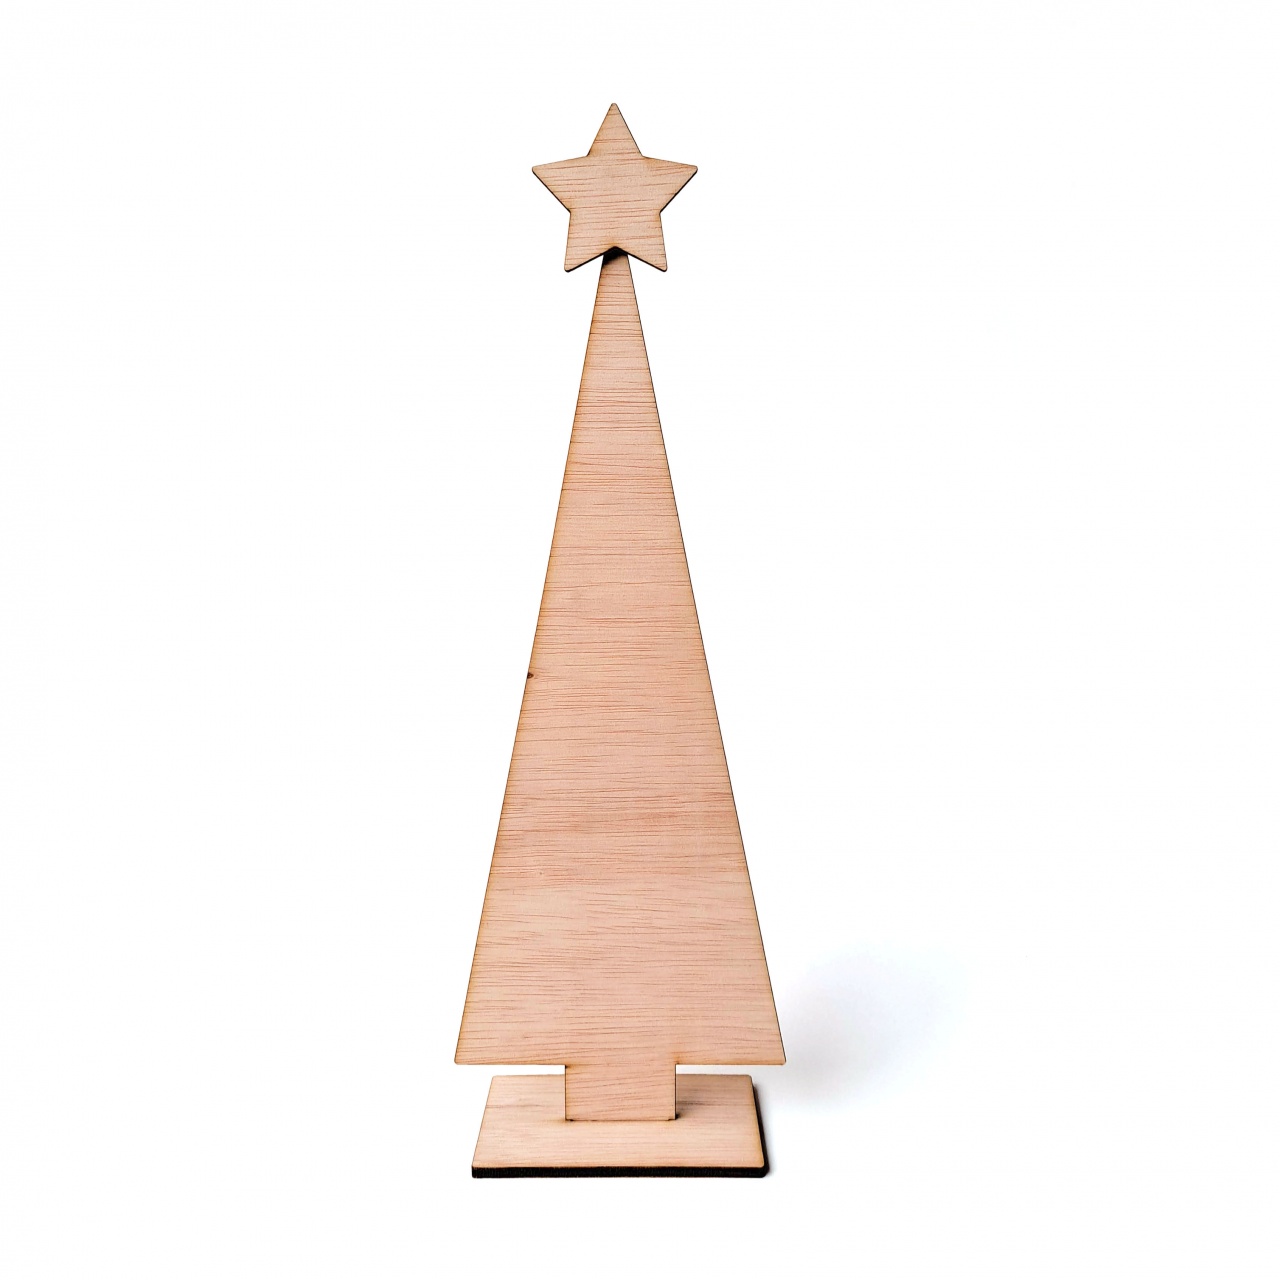 Brad minimalist cu bază și stea, 30 cm înălțime, placaj lemn natur